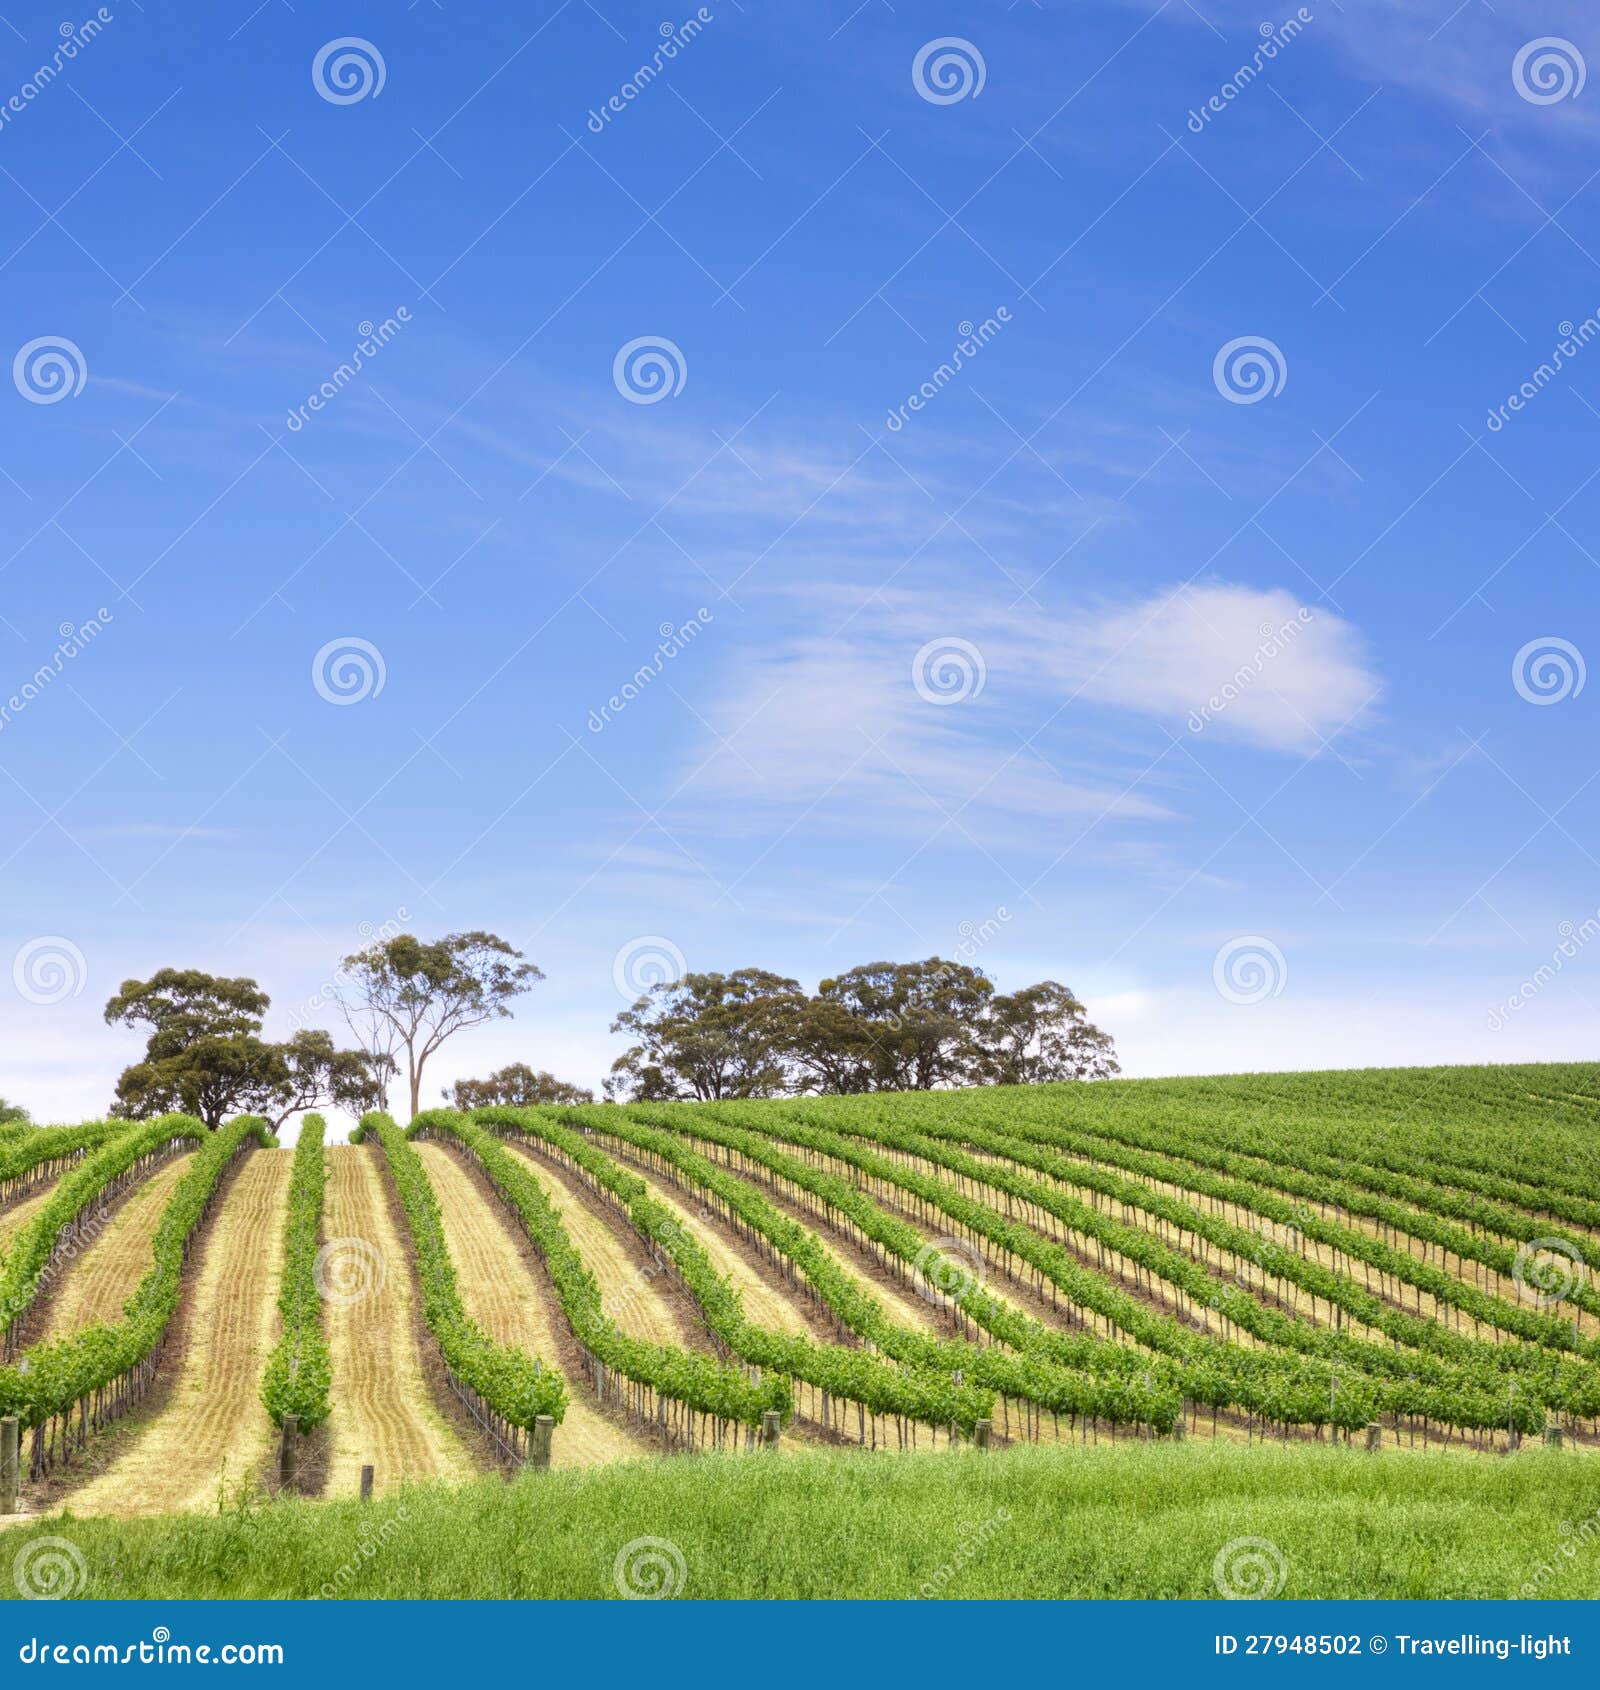 vineyard clare valley australia